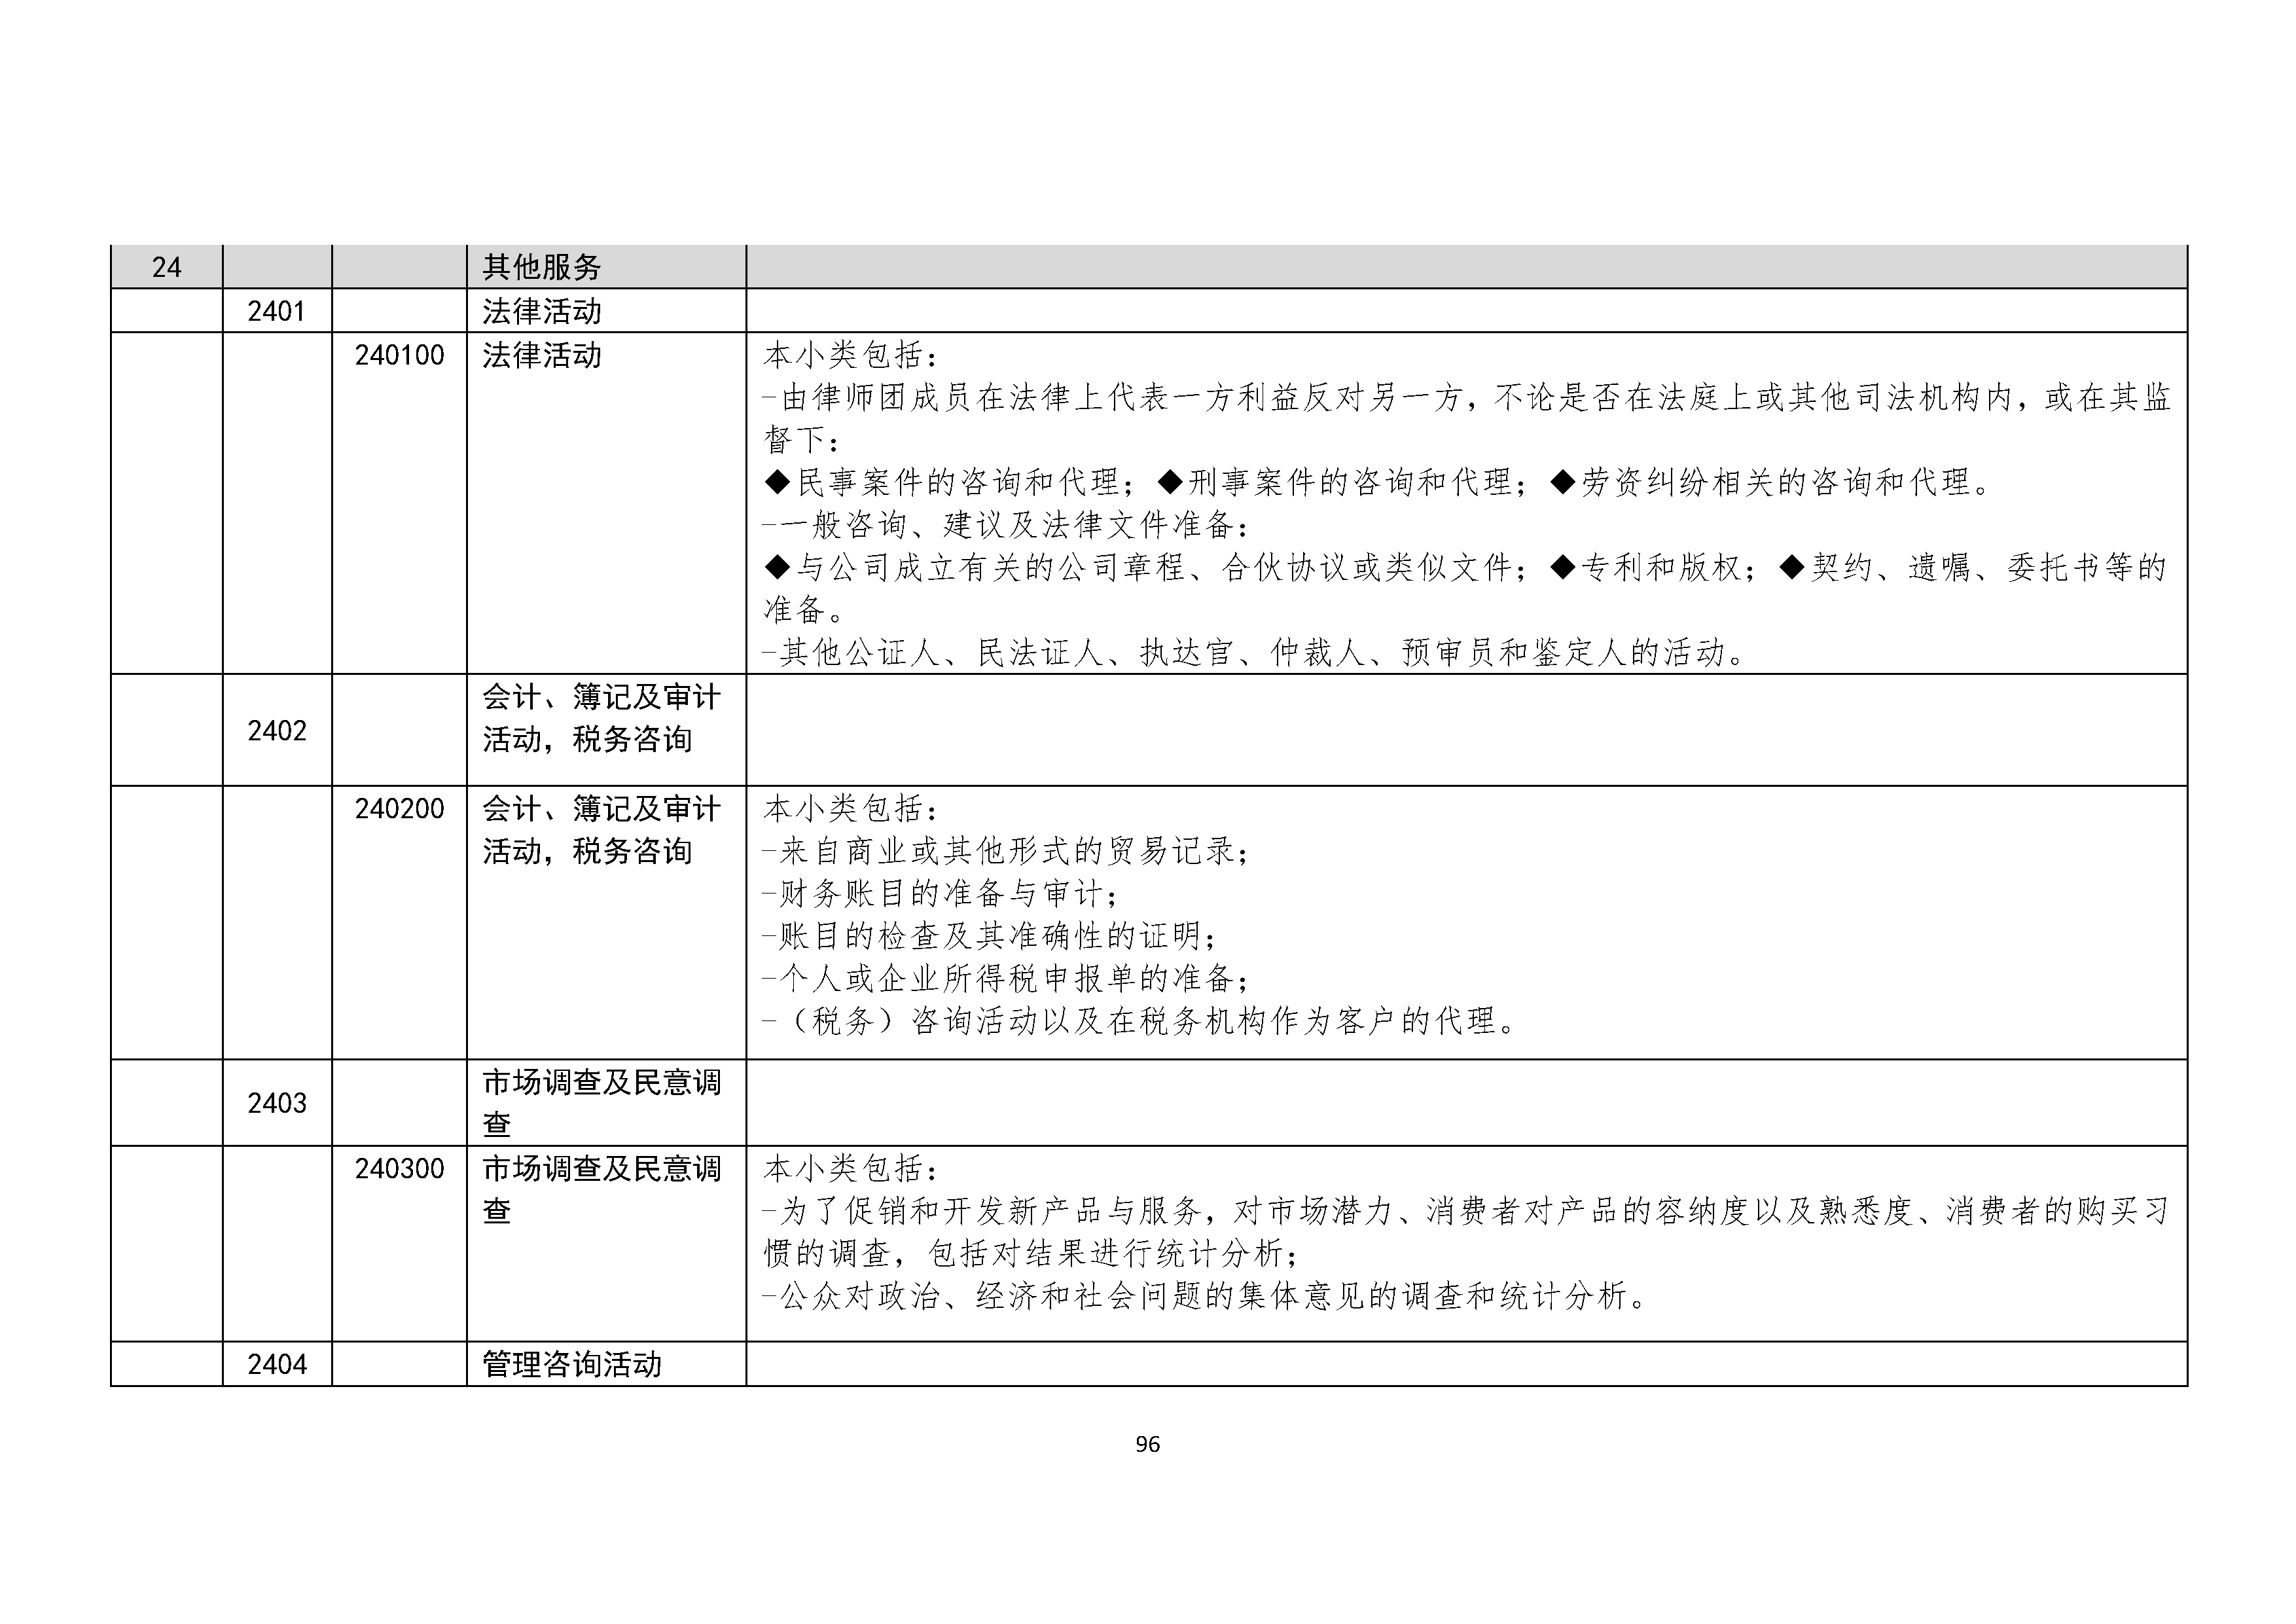 B.6《中国核能行业协会供应商评价供应商分类及产品专业范围划分规定》_页面_097.png